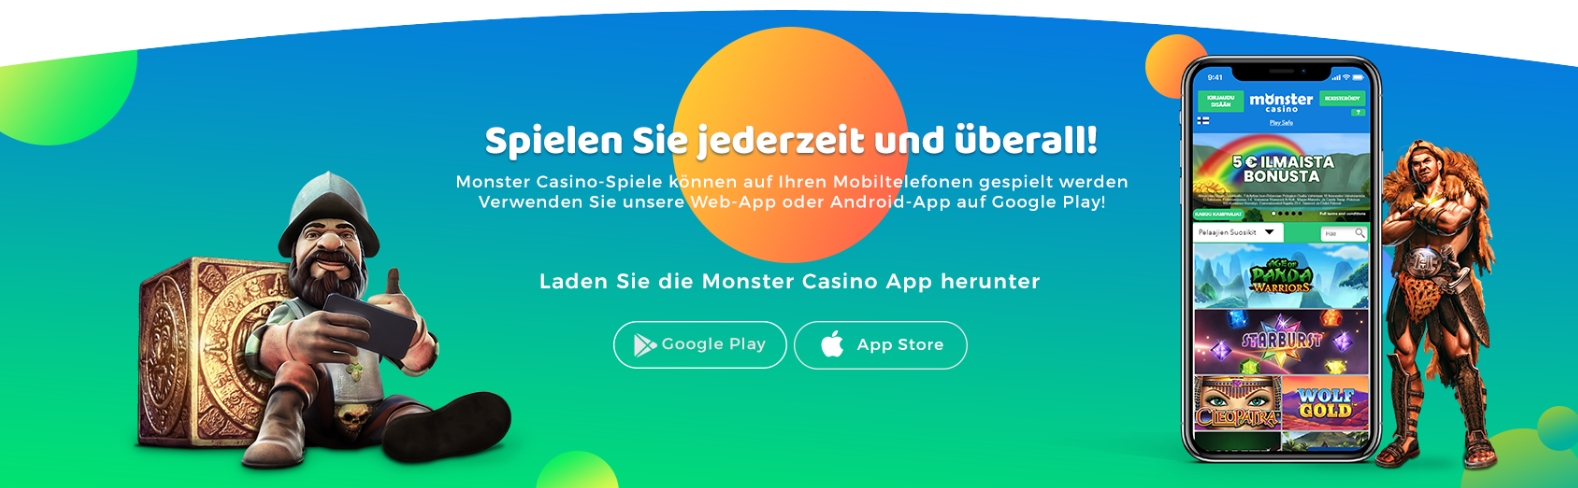 Monster Casino App